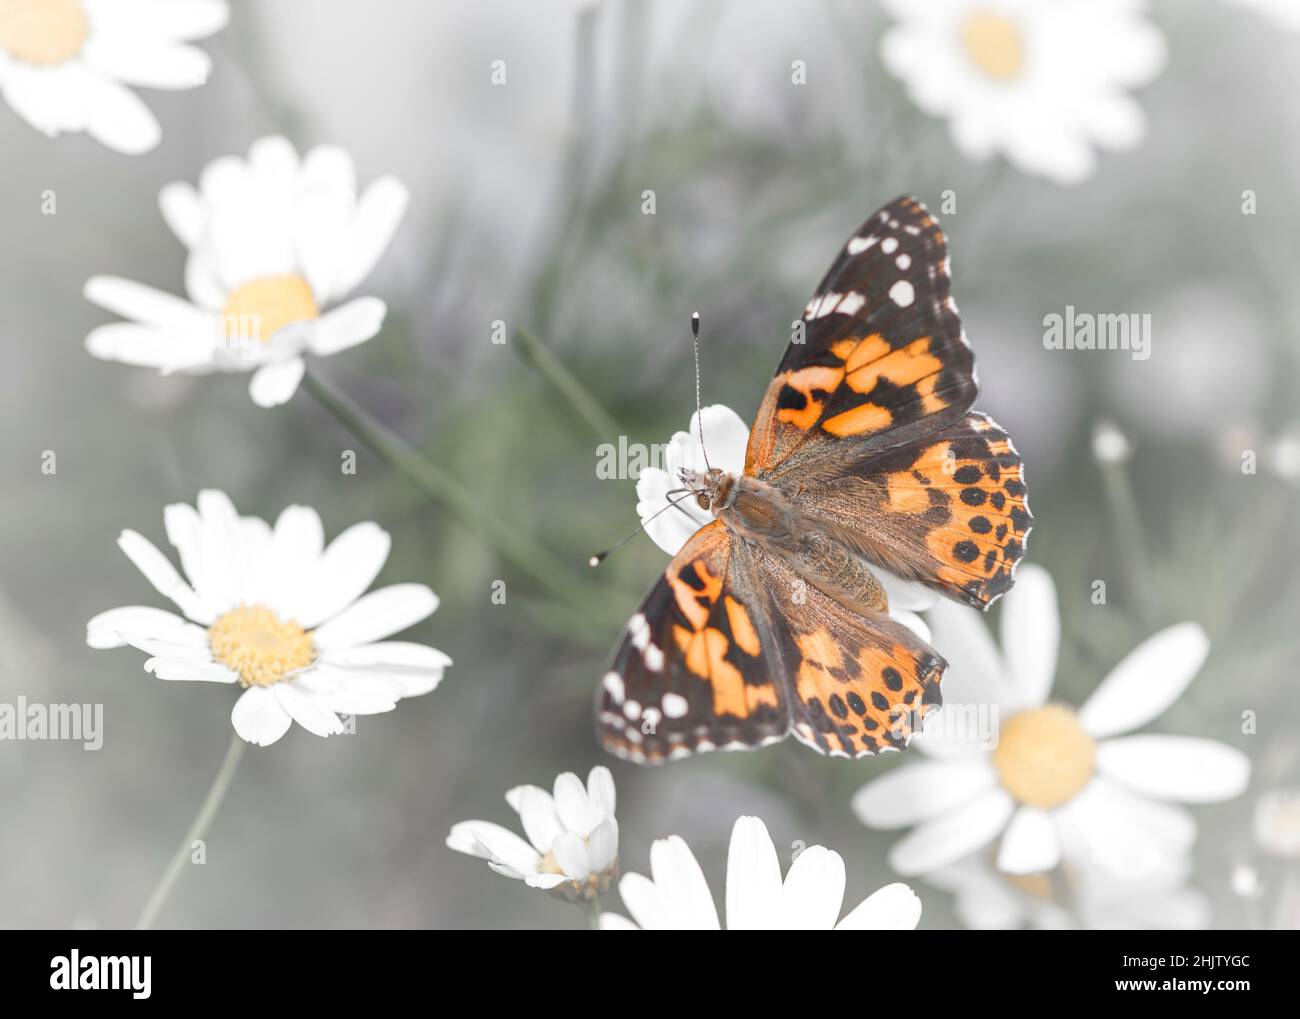 Papillon de dame peint (vanessa cardui) avec ses ailes s'étaler, se nourrissant des pâquerettes Banque D'Images